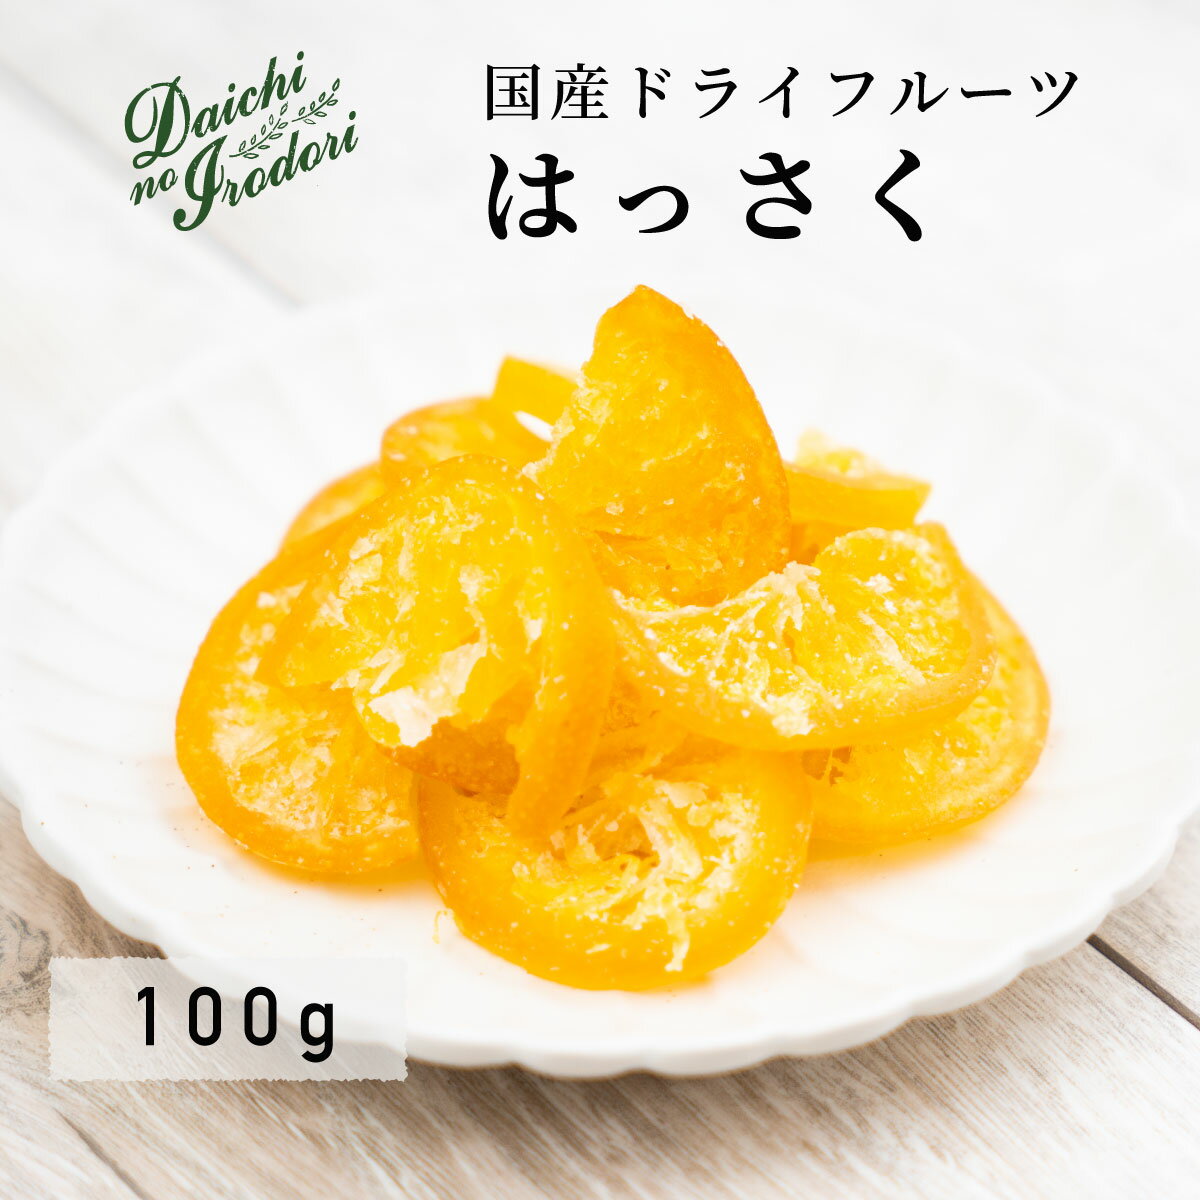 乾燥橘子果實 水果乾 日本產 八朔 100g x 1包 夾鏈袋裝日本必買 | 日本樂天熱銷 0